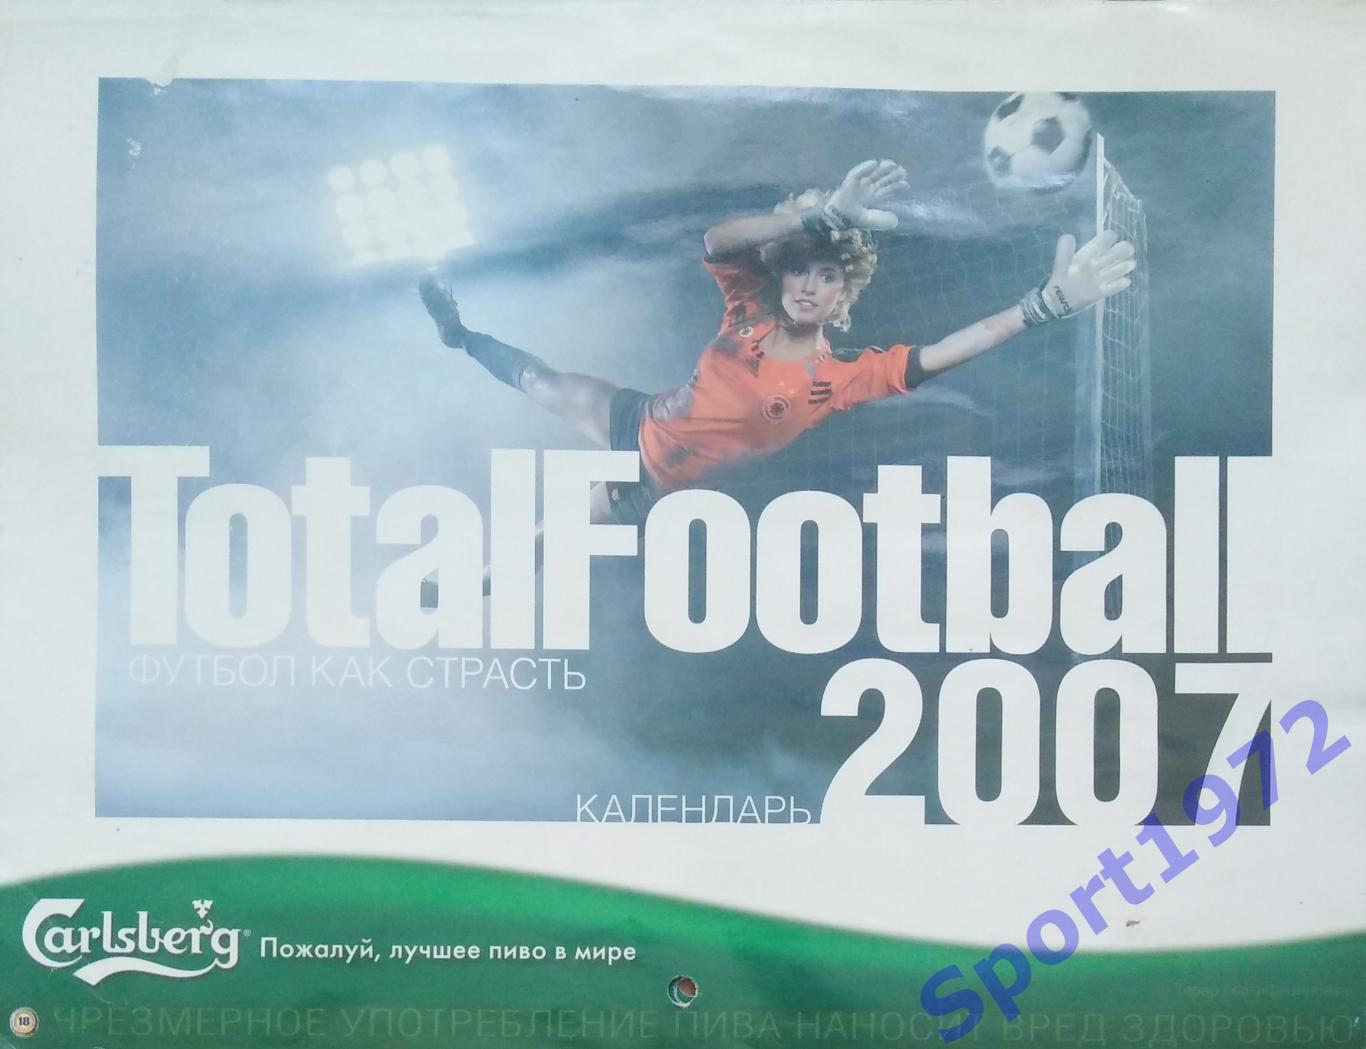 Настенный календарь Тотал Футбол 2007 -2008.